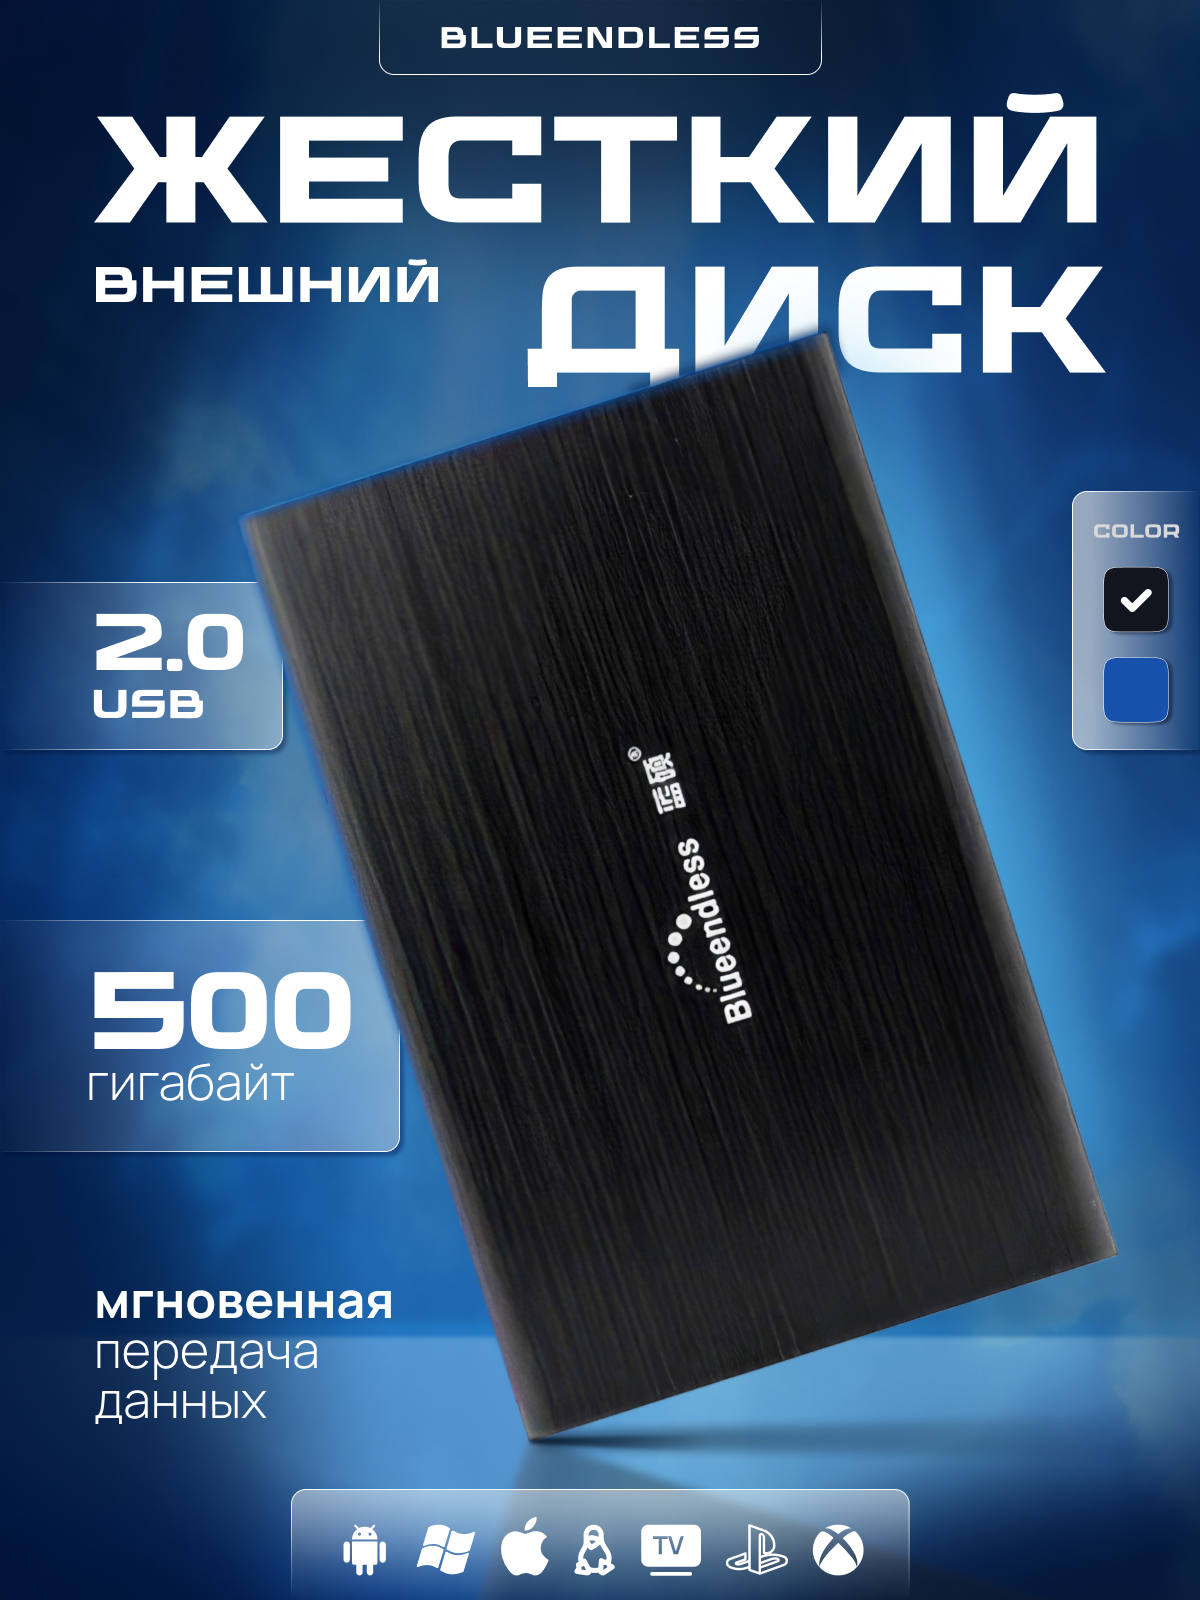 Внешний жесткий диск HDD 500Гб Blueendless черный